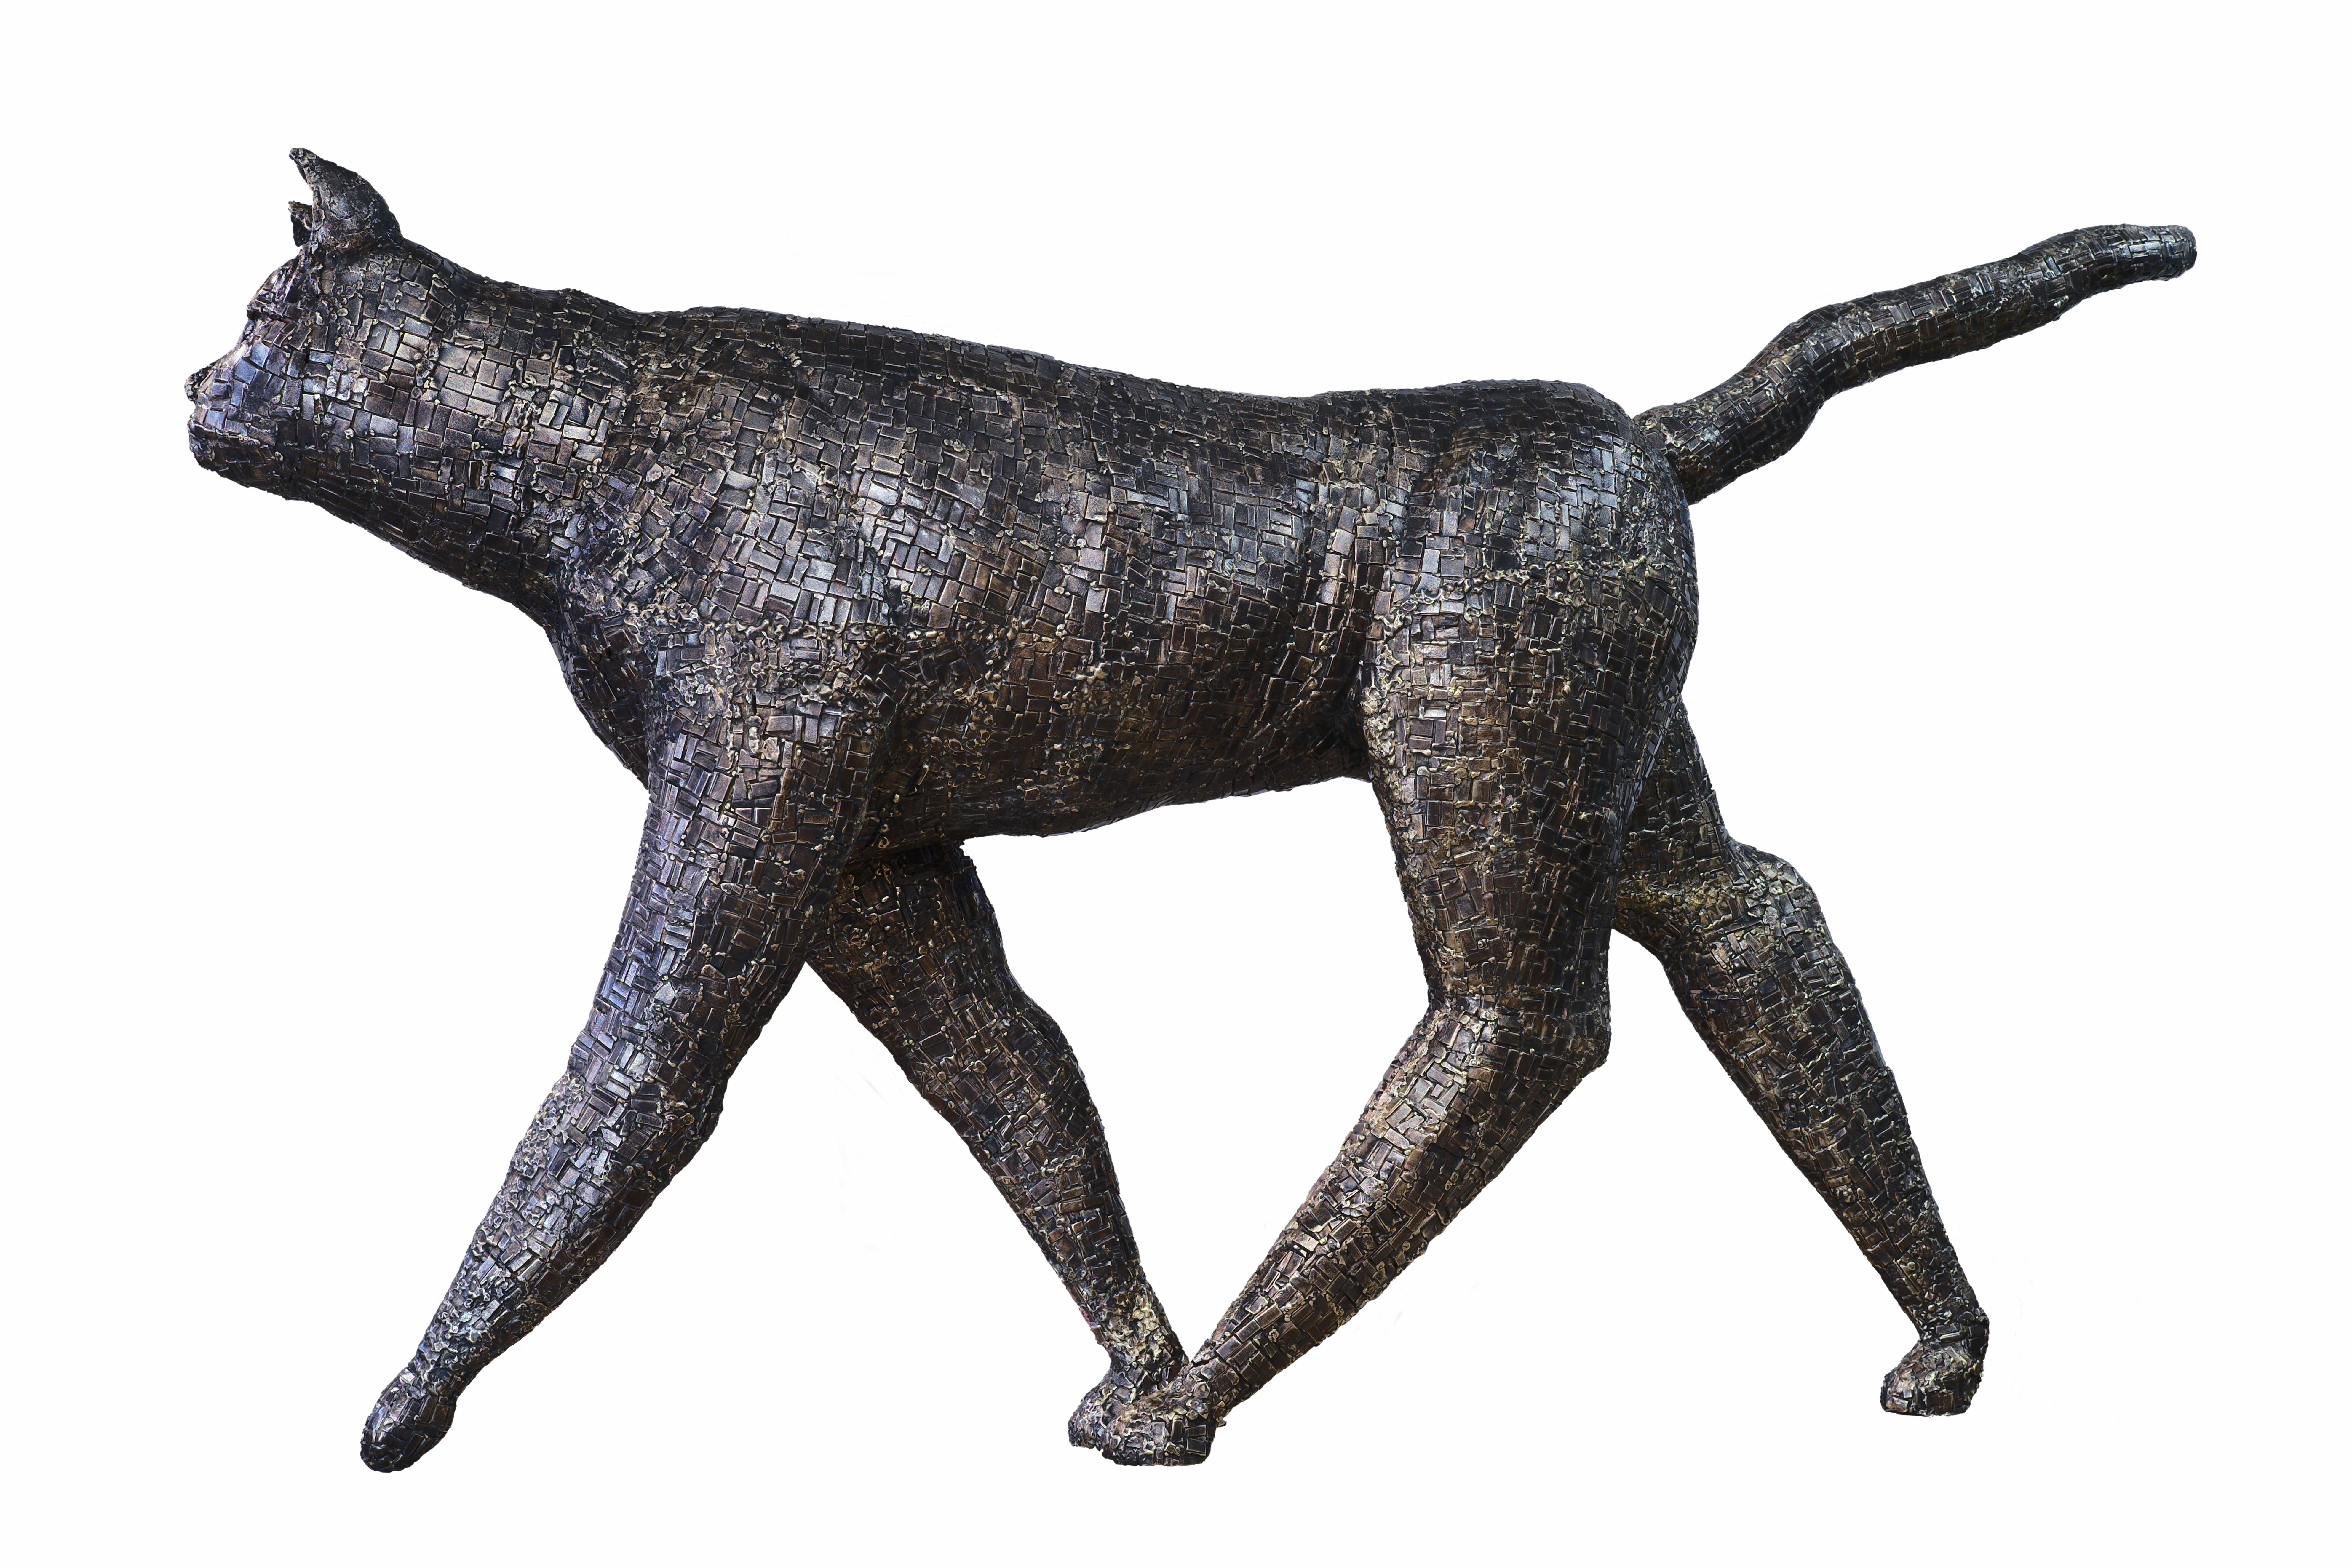 Mary Block
Walking Cat, 2022
bronze
39h x 64w x 13d in
99.06h x 162.56w x 33.02d cm
MBK001
